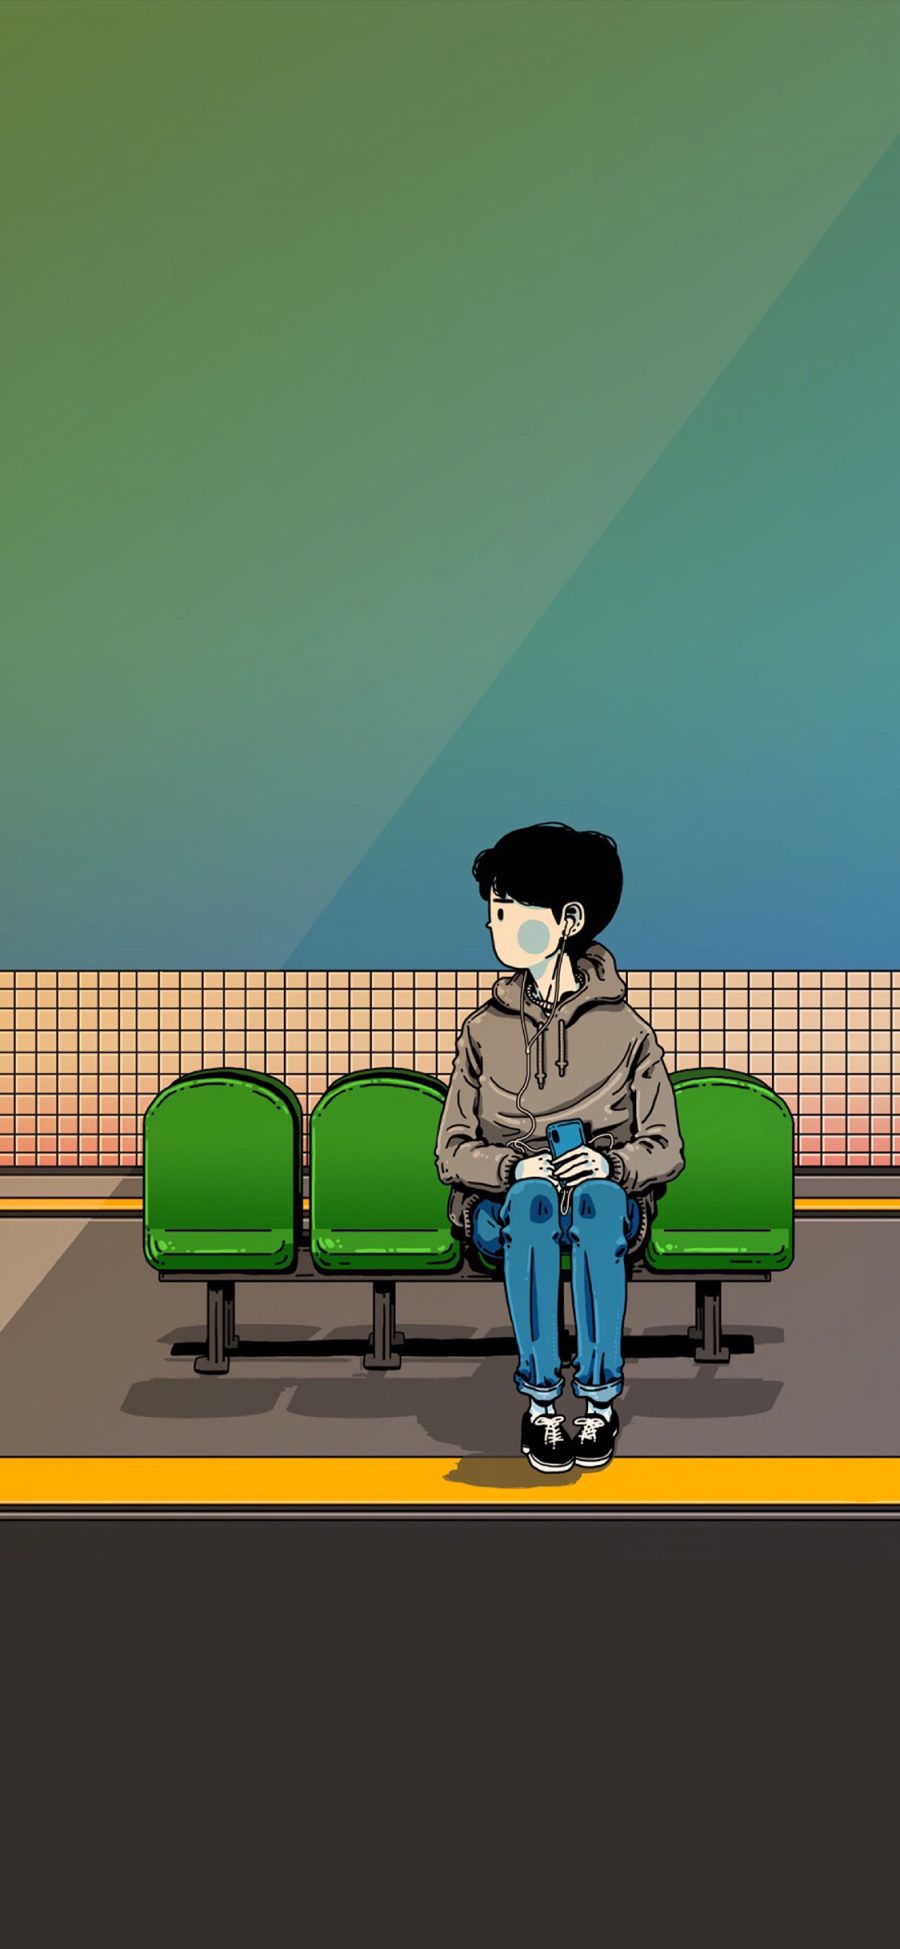 [2436×1125]CJroblue插图 男孩 车站 苹果手机动漫壁纸图片